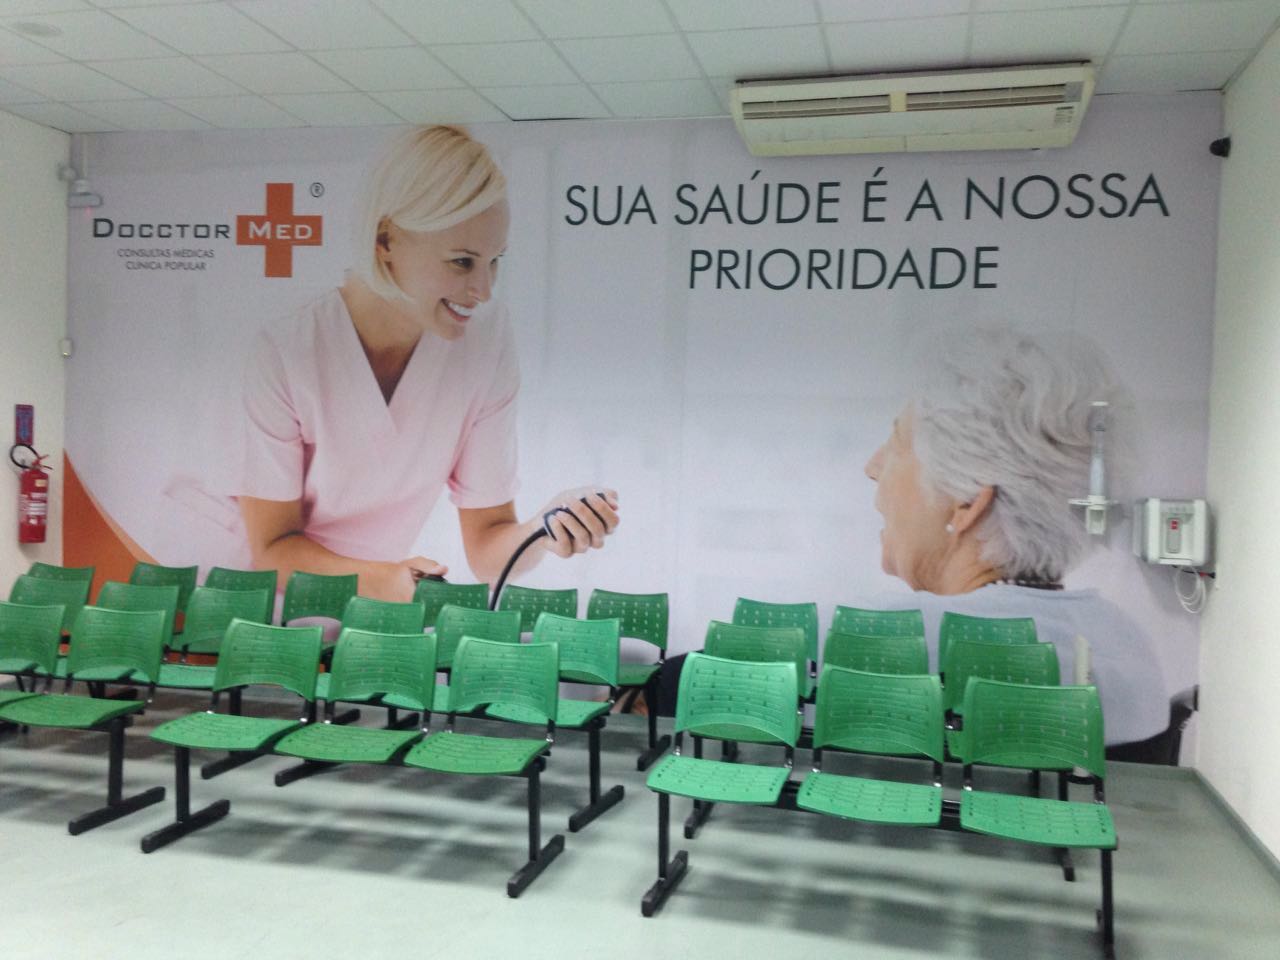 Em apenas 3 anos, Docctor Med se torna a maior rede de franquias de Clínicas Médicas do Brasil